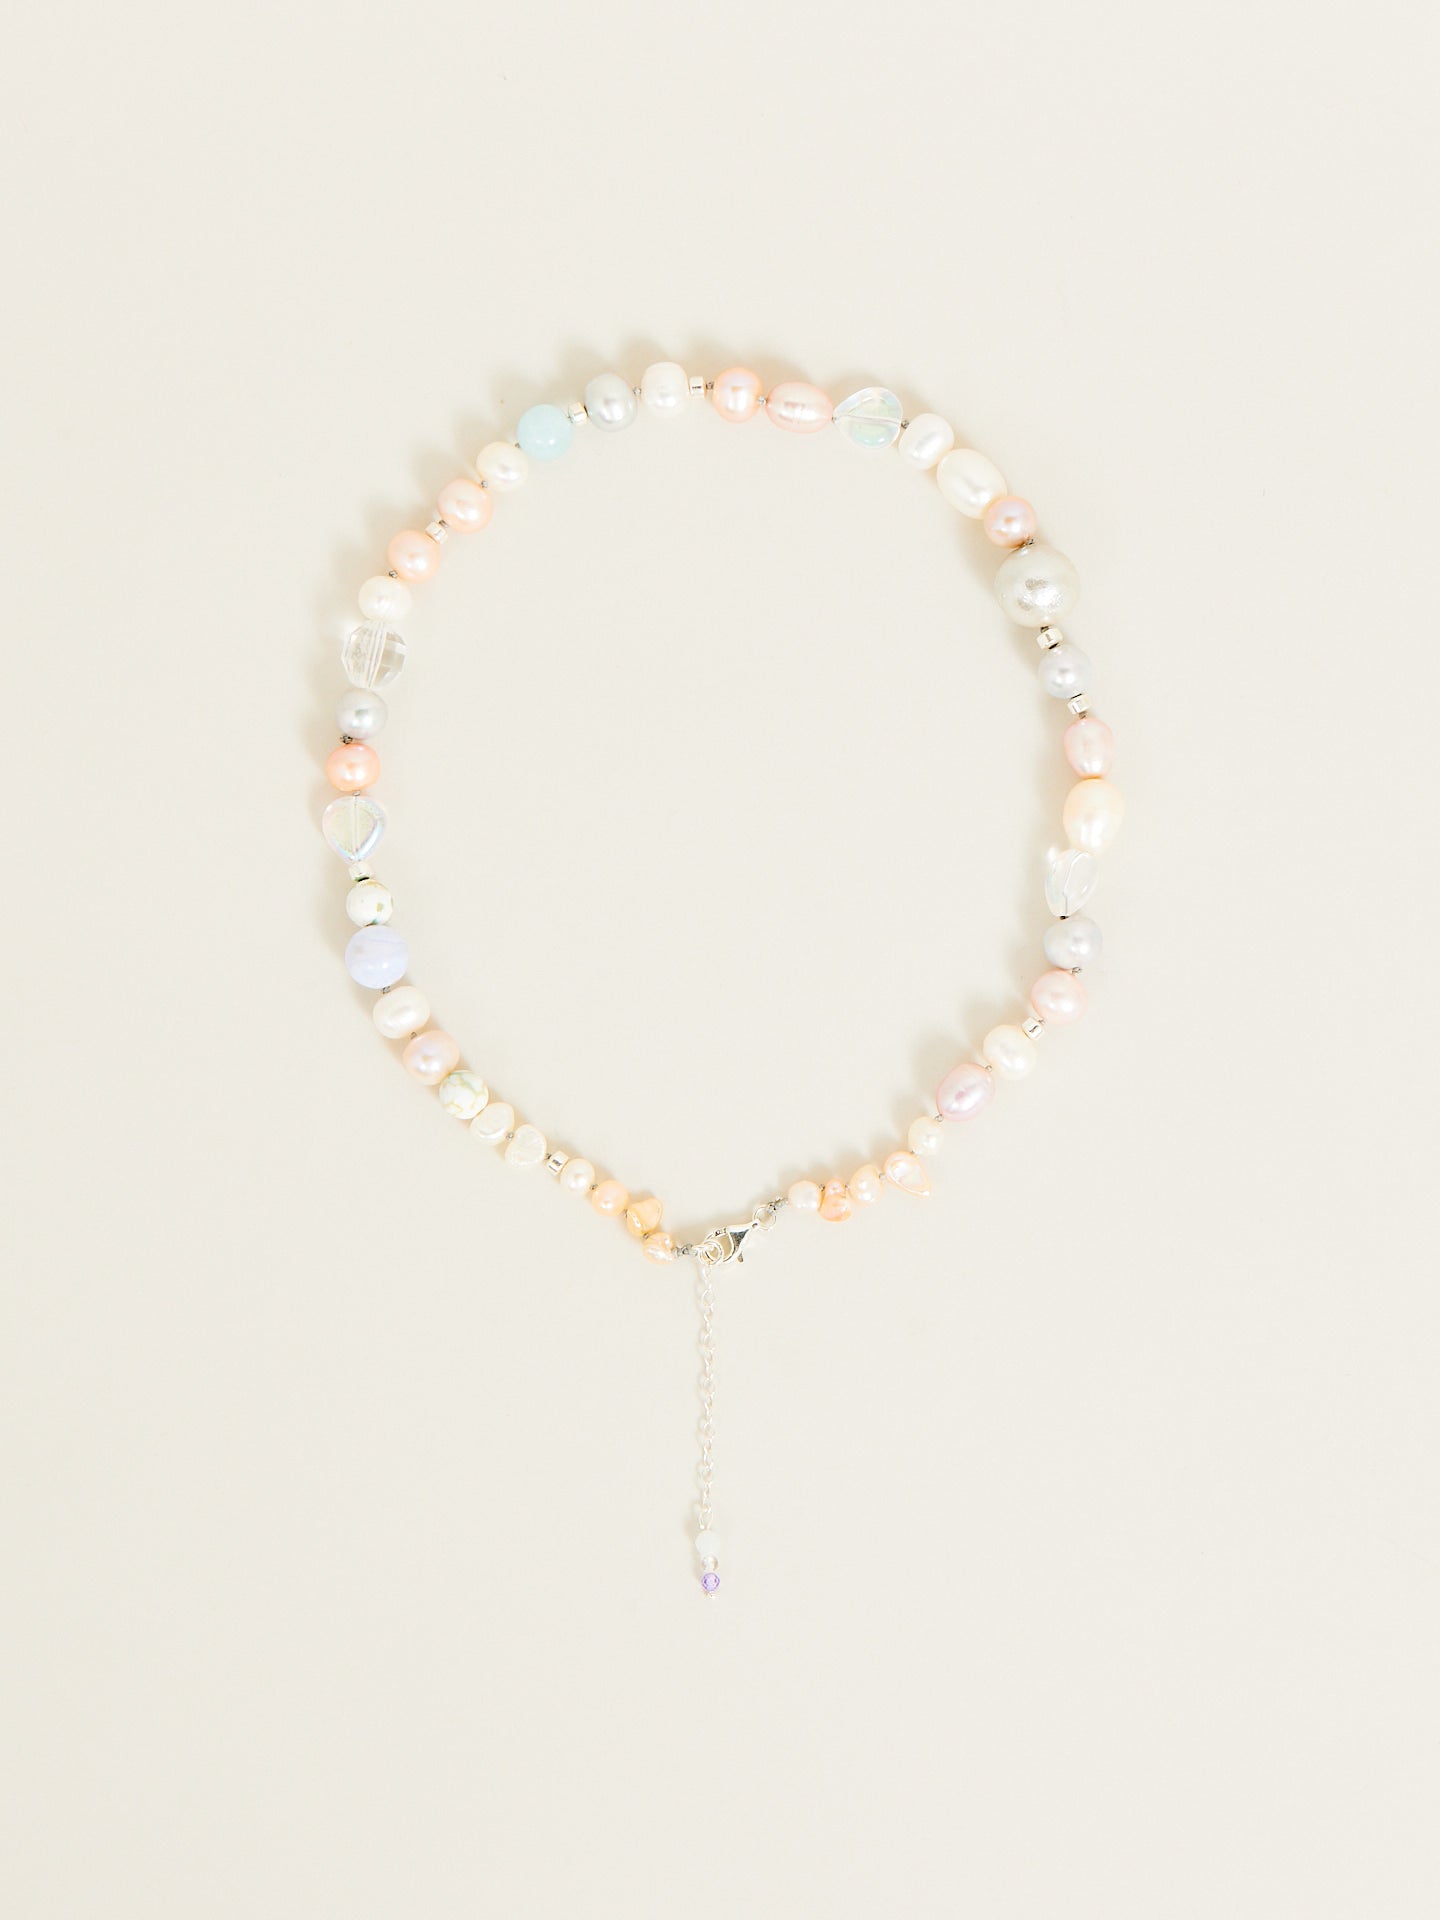 eine Perlenkette in Pastellfarben mit einem kleinen Anhänger.